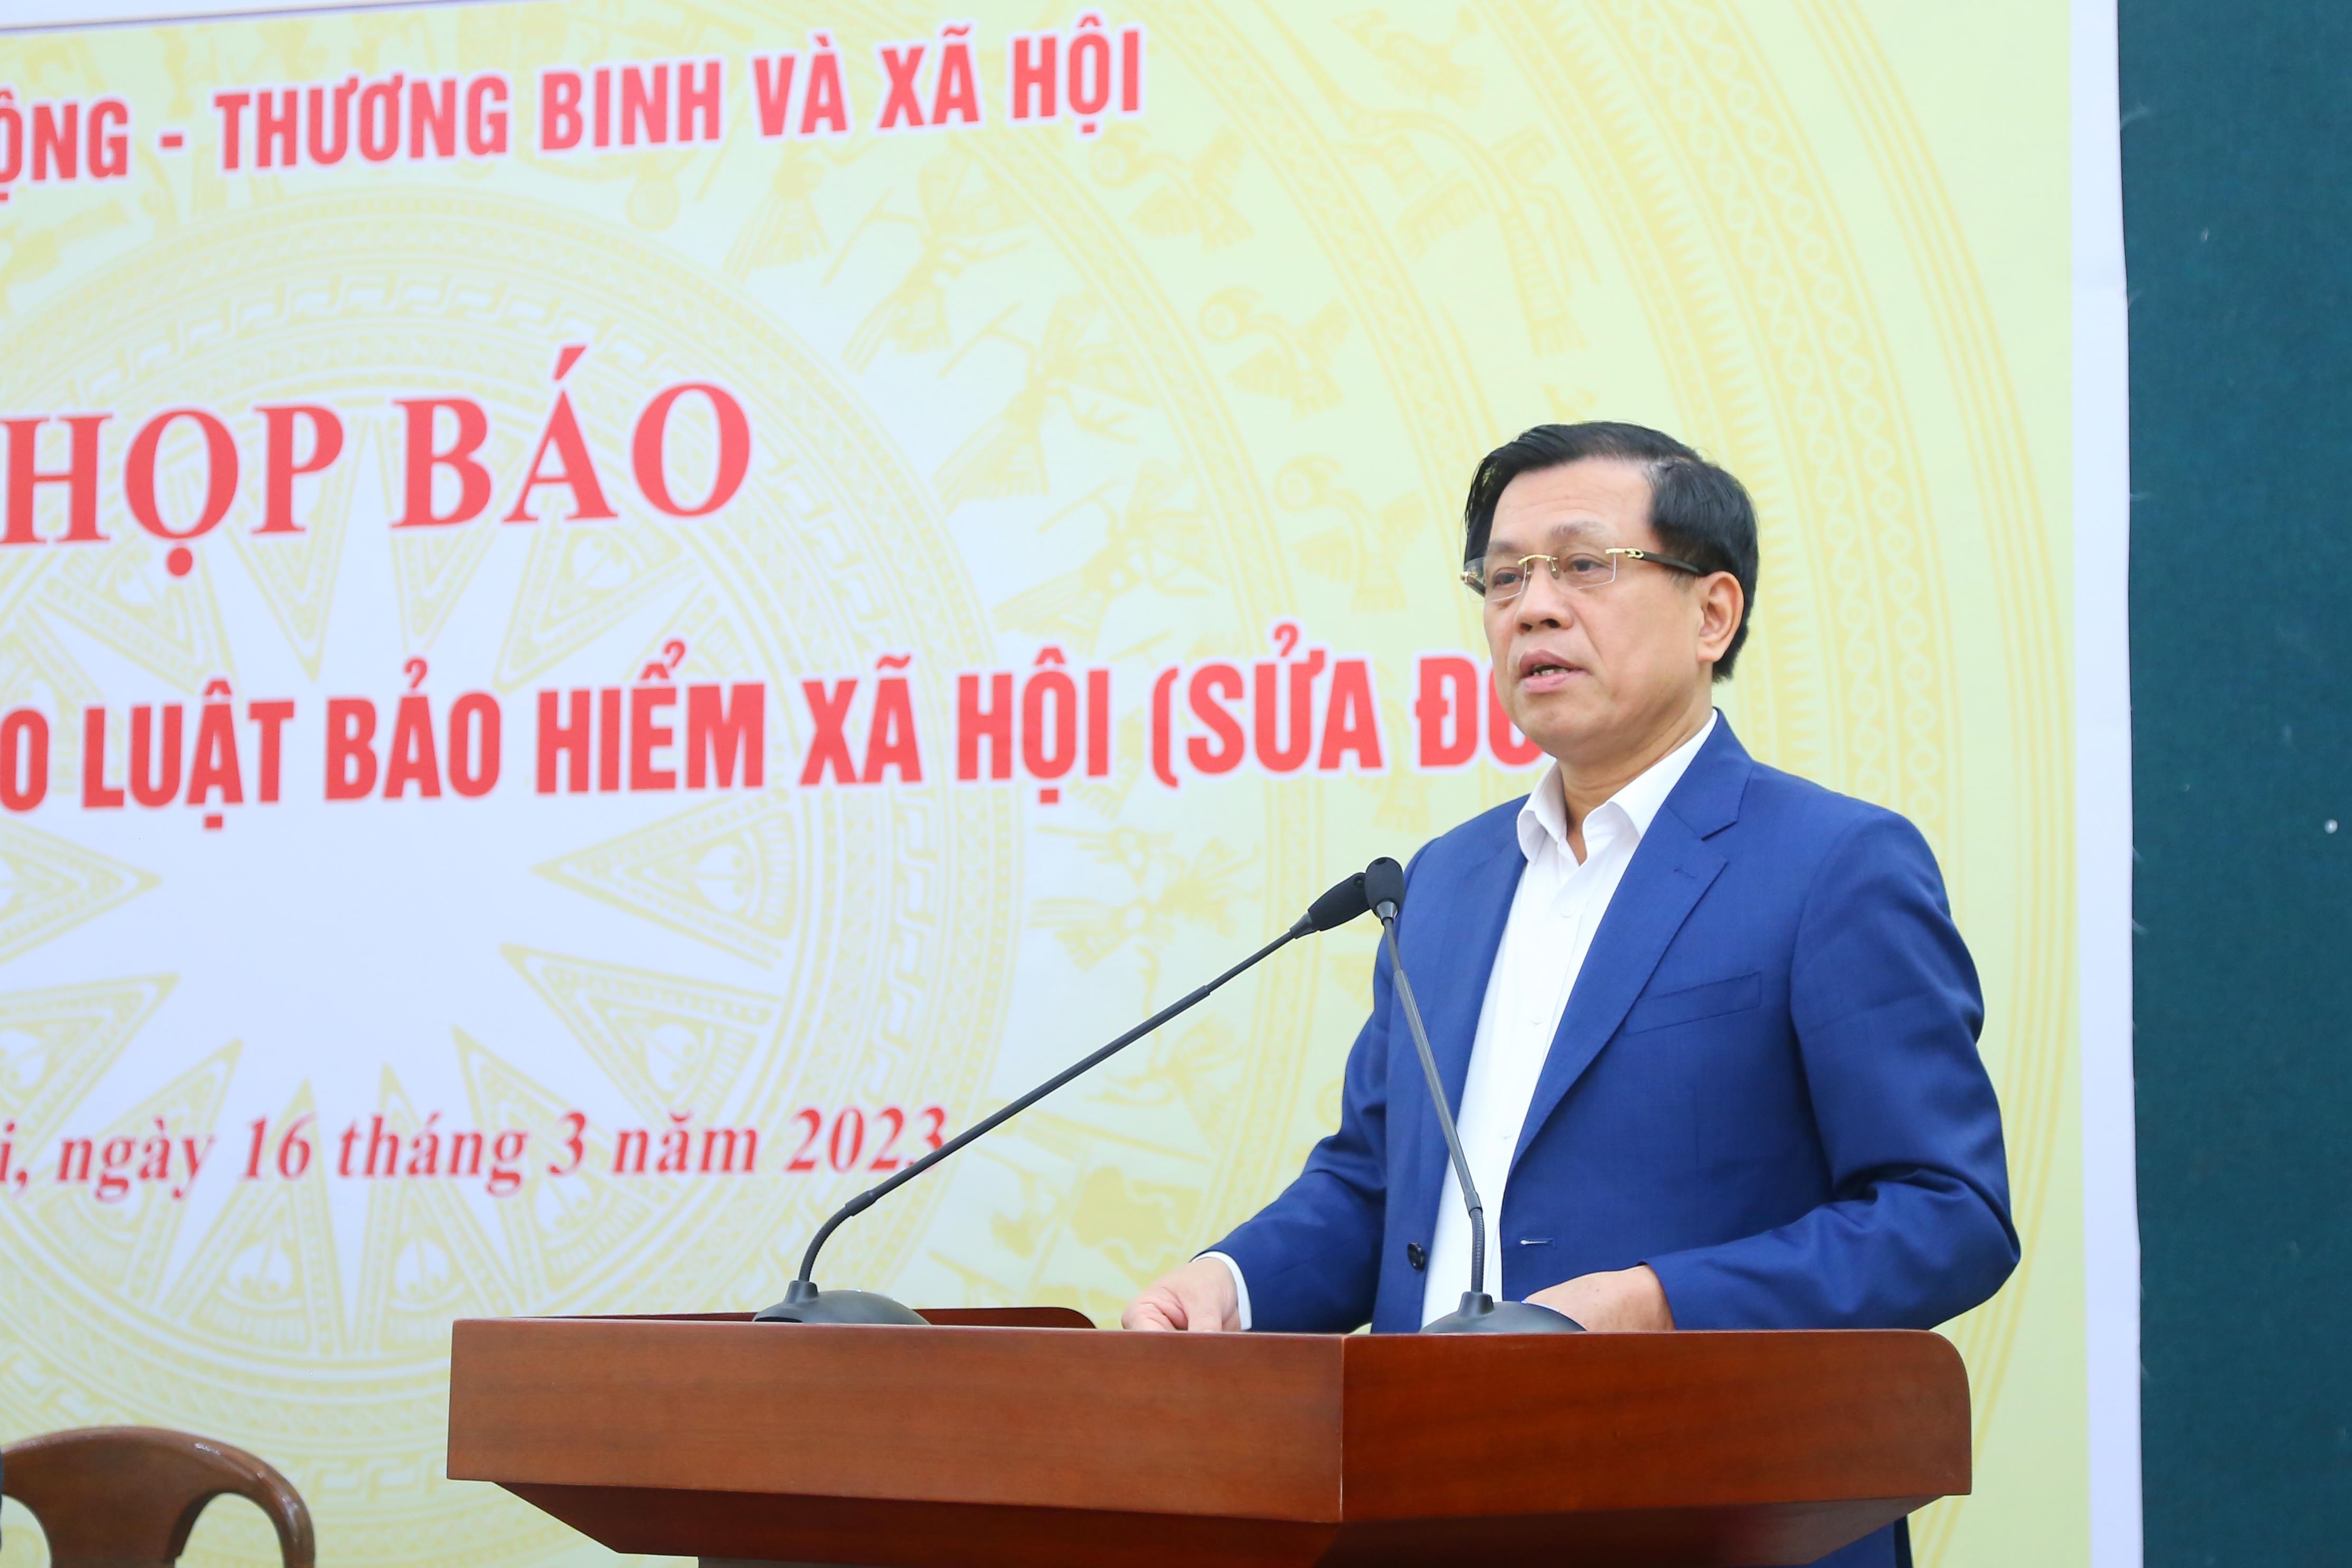 Thứ trưởng Bộ LĐ-TB&XH Nguyễn Bá Hoan phát biểu tại buổi họp báo thông tin dự thảo Luật BHXH (sửa đổi).